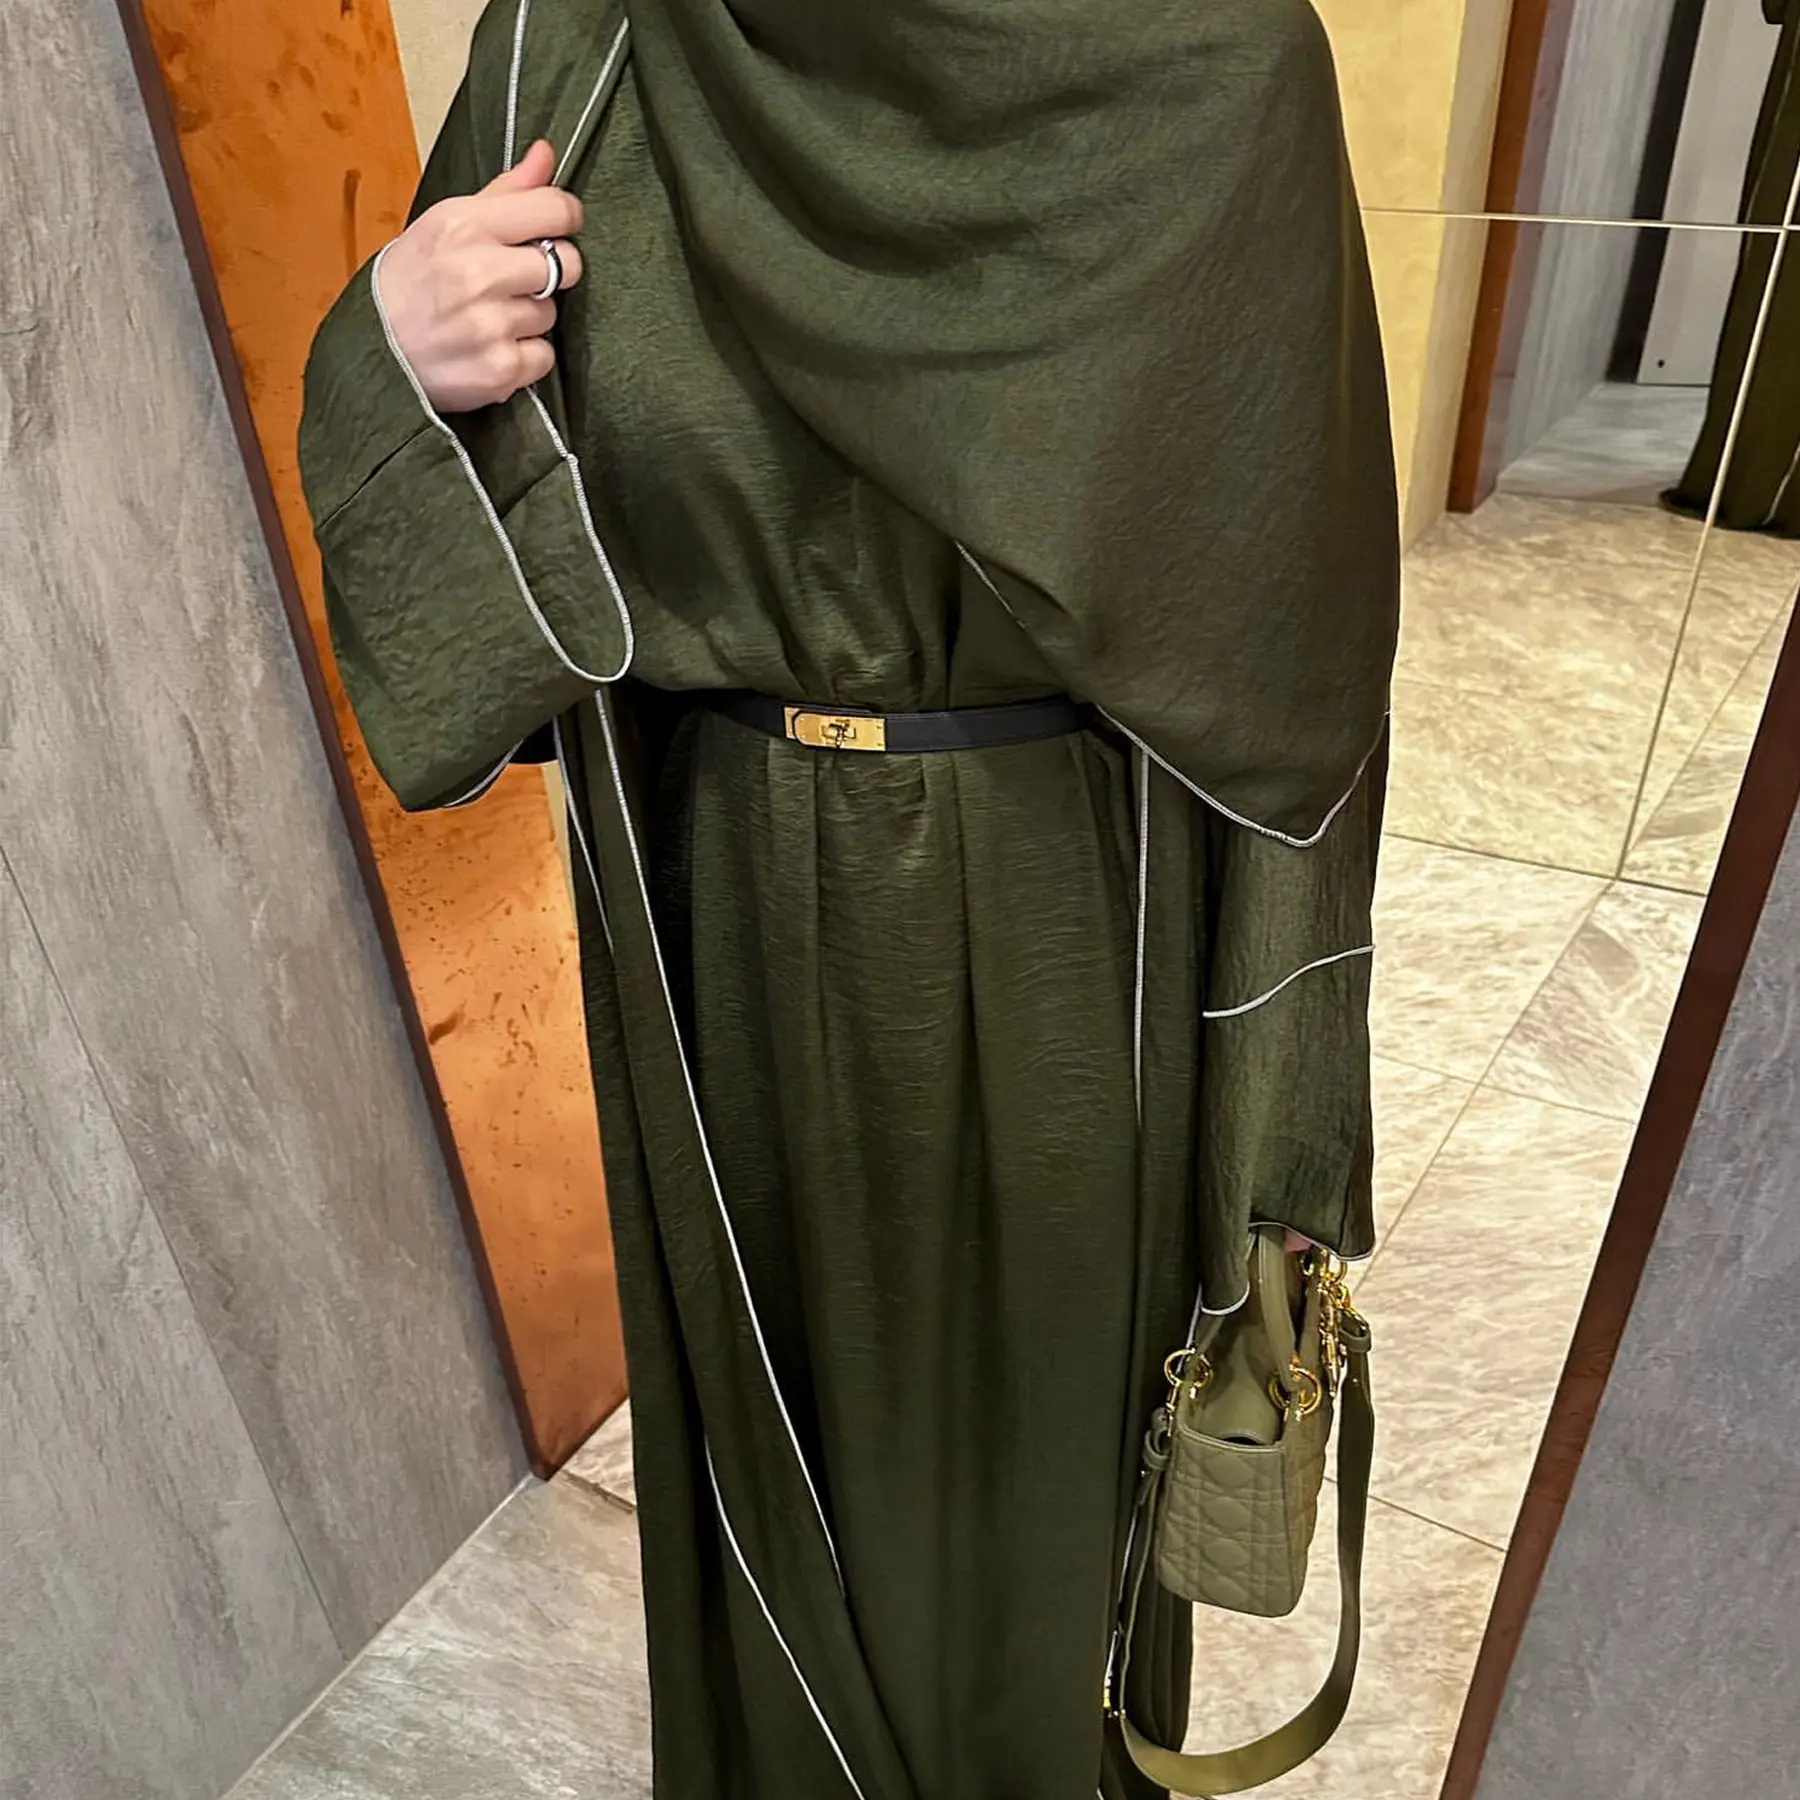 स्टॉक कस्टमाइज्ड अबाया सूट उच्च गुणवत्ता वाले दो टुकड़े के साथ सेट किए गए स्टॉक में महिलाओं मुस्लिम पोशाक फैशन सूट